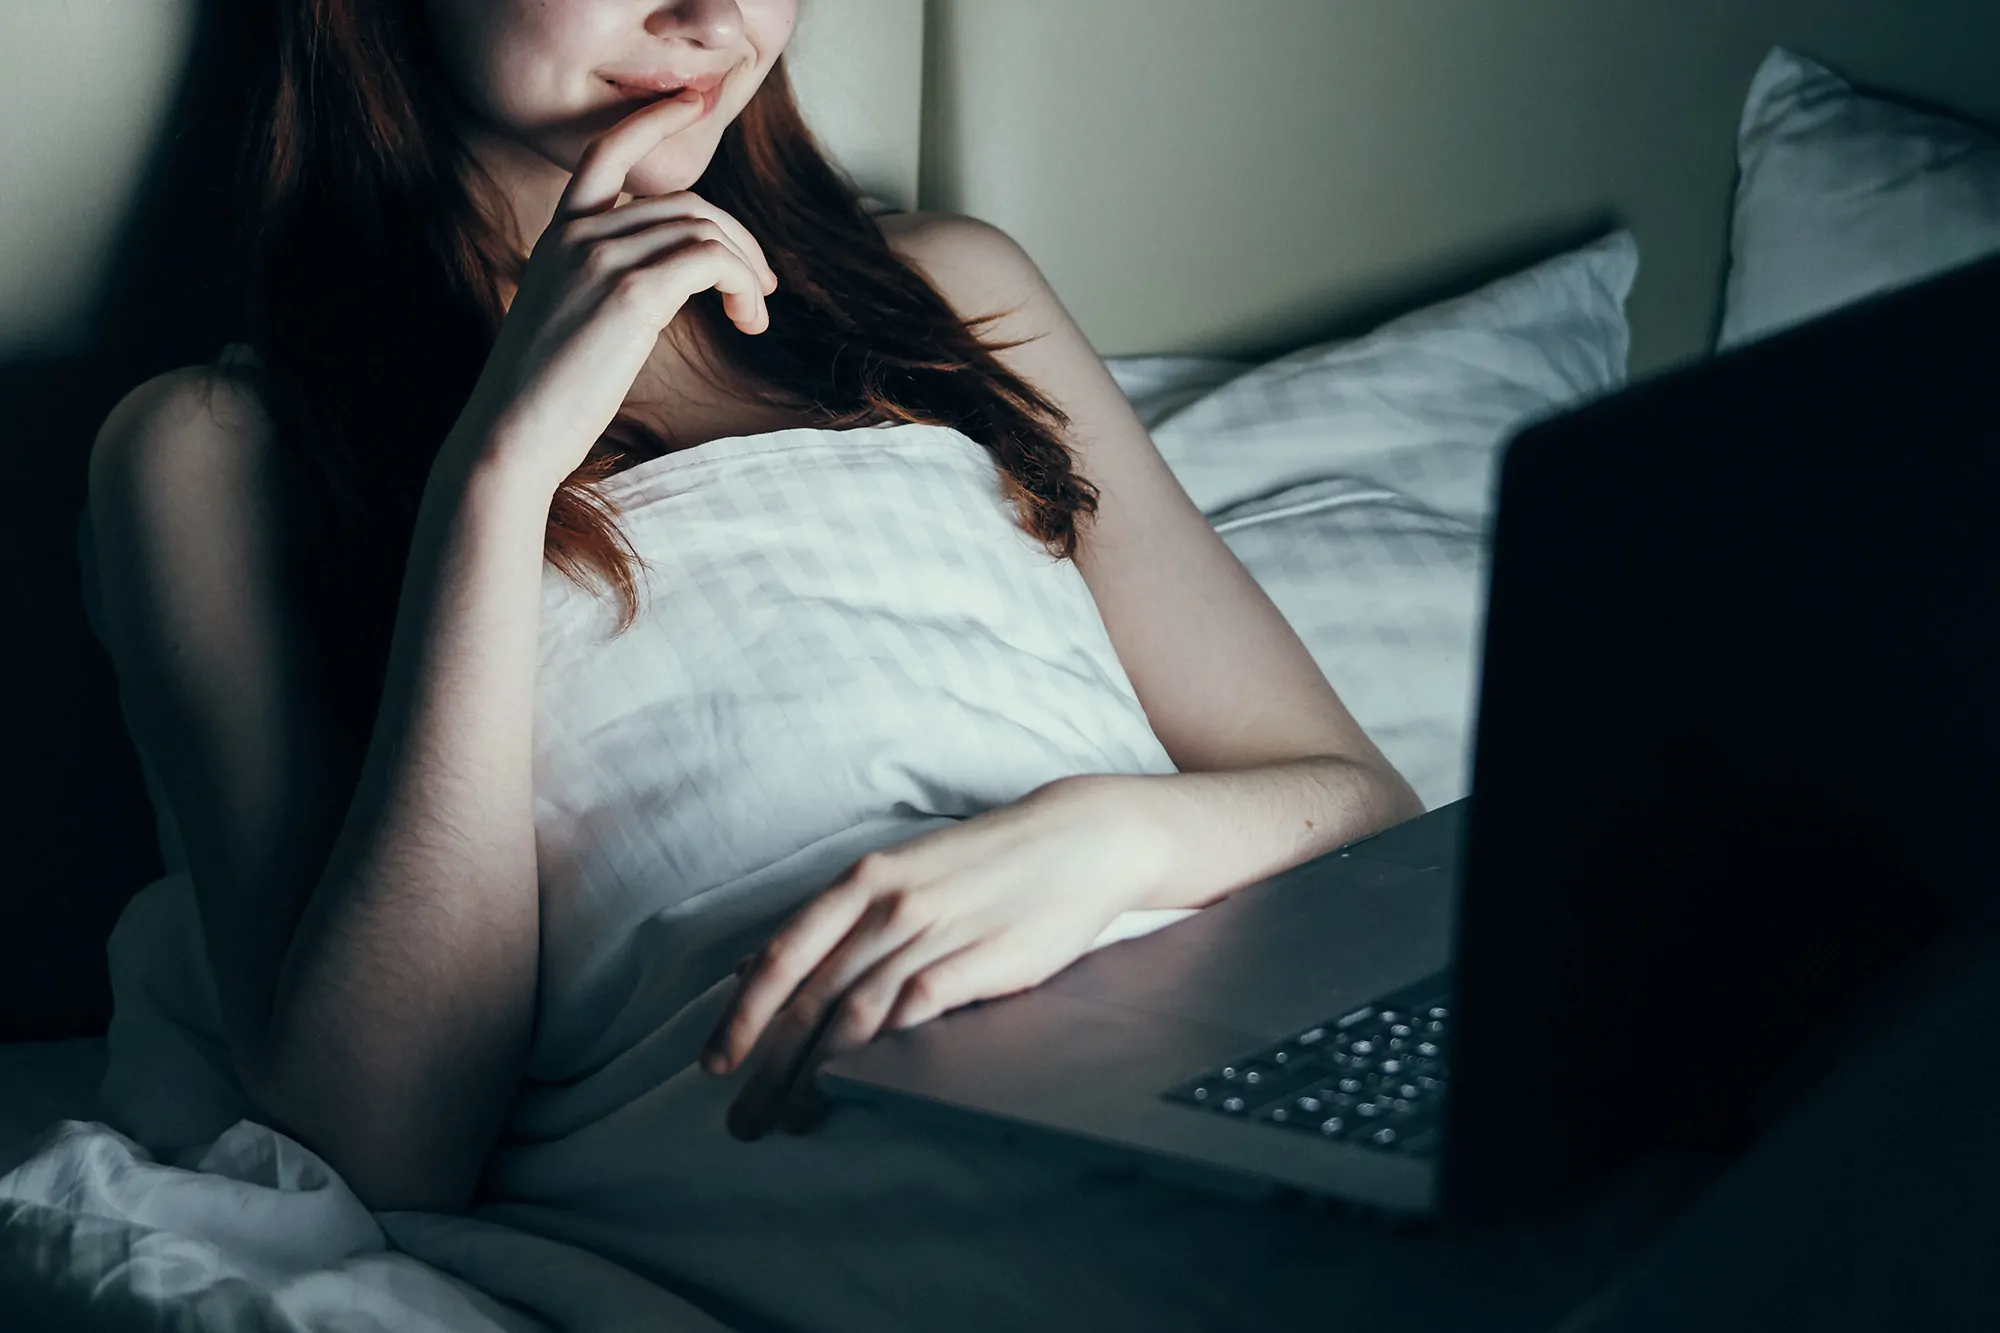 Women watch porn videos